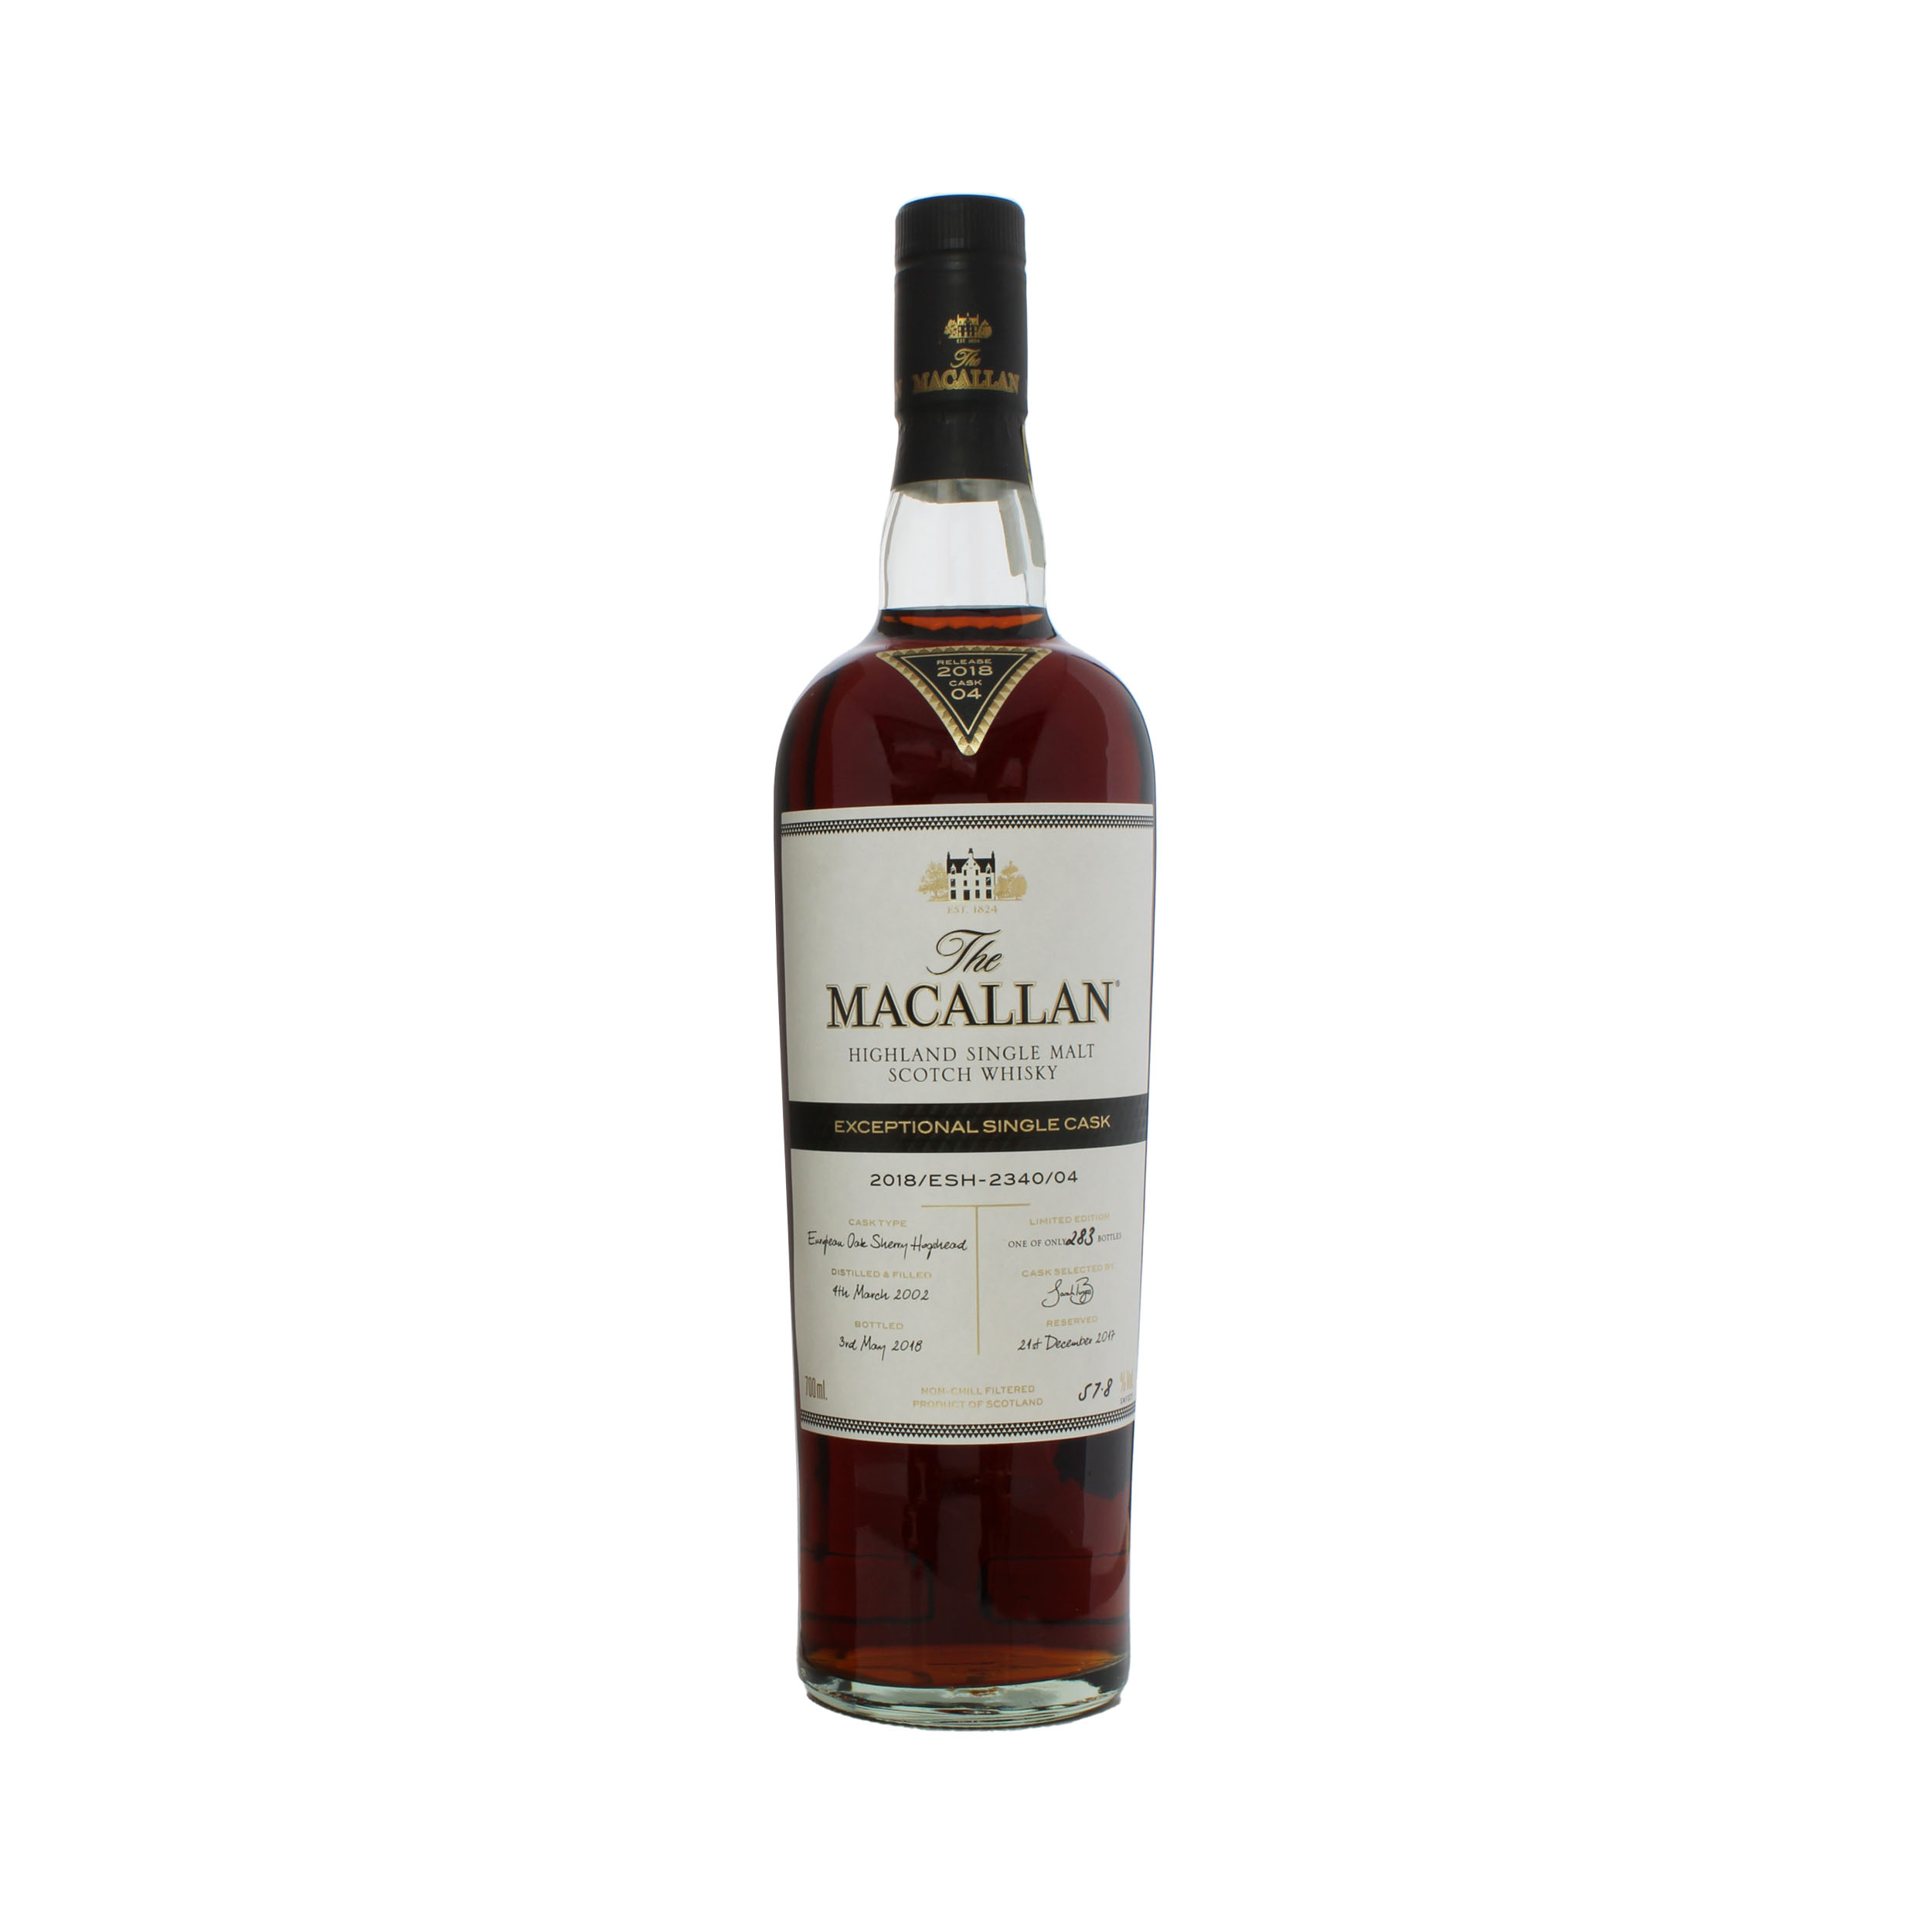 Macallan 2002 Exceptional Cask 2018 Release.